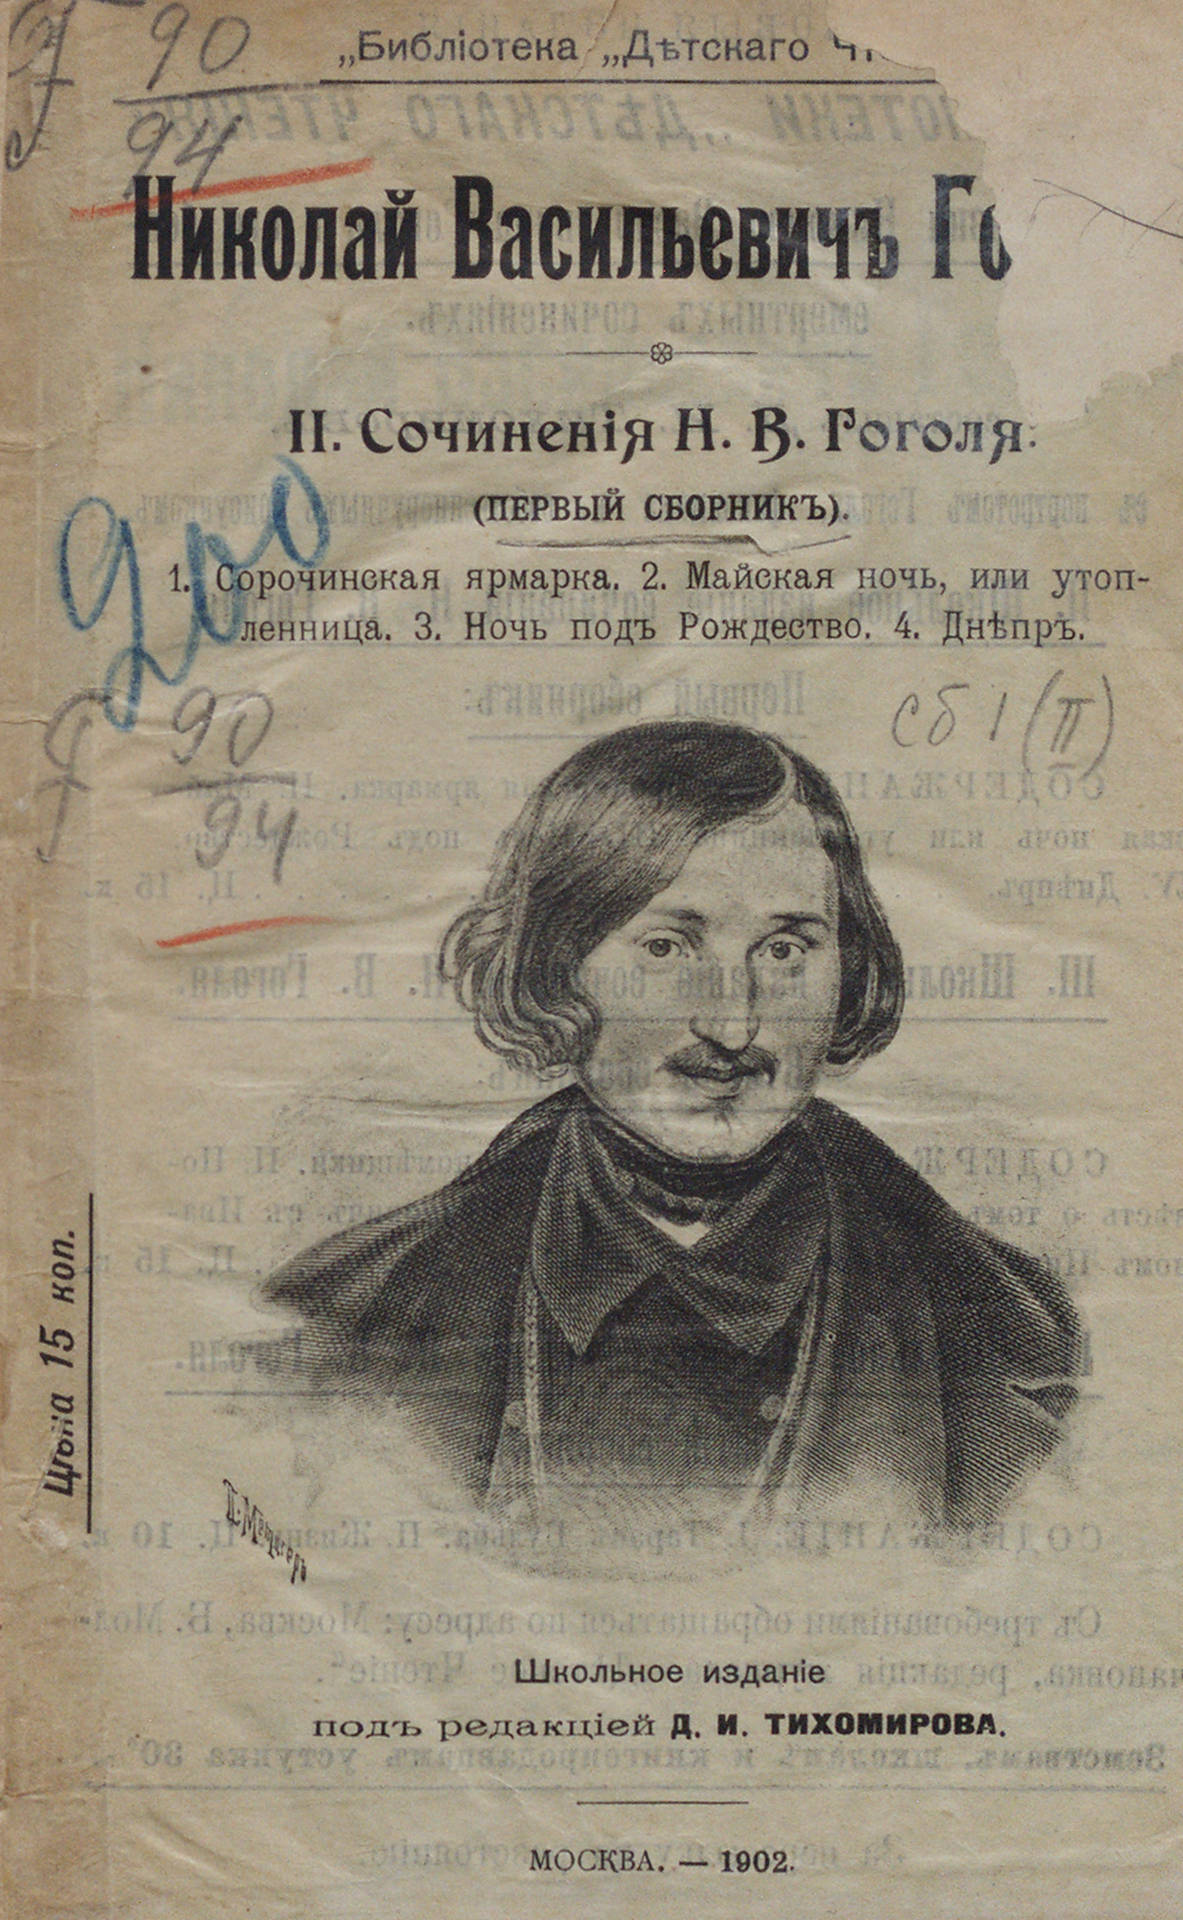 Сочинения Н. В. Гоголя: школьное издание под редакцией Д. И. Тихомирова: первый сборник